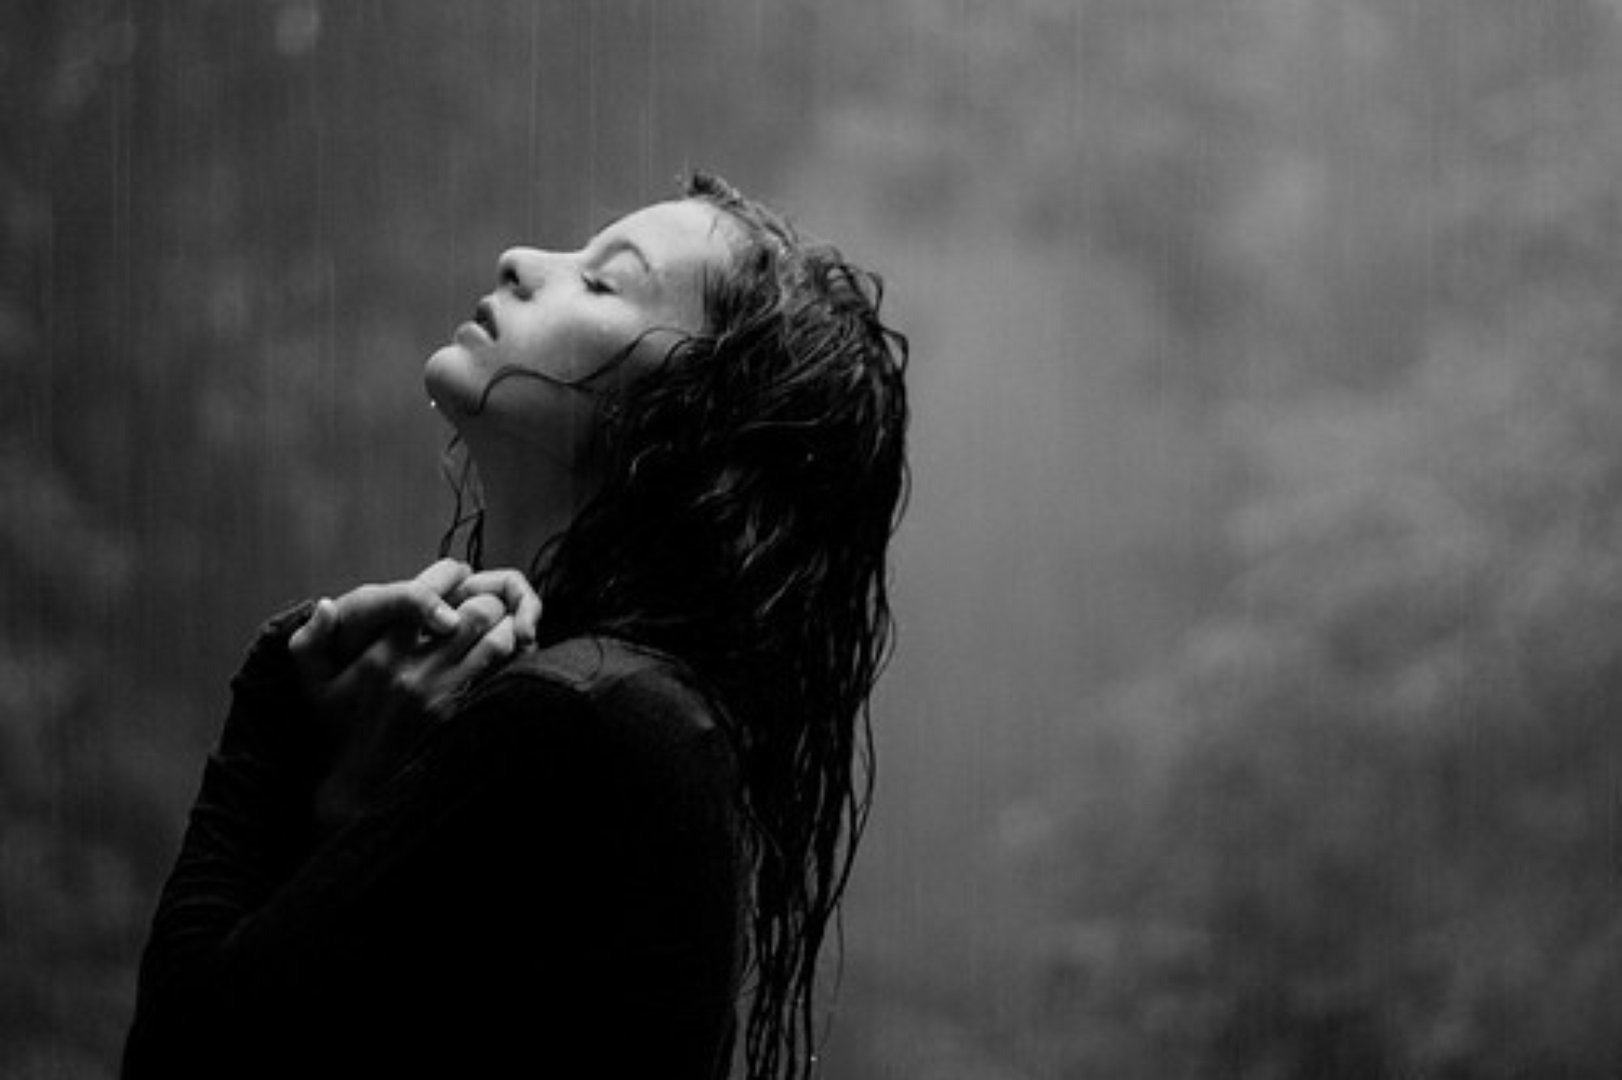 От боли я пою. Девушка под дождем. Девушка в отчаянии. Девушка кричит. Одинокая девушка под дождем.